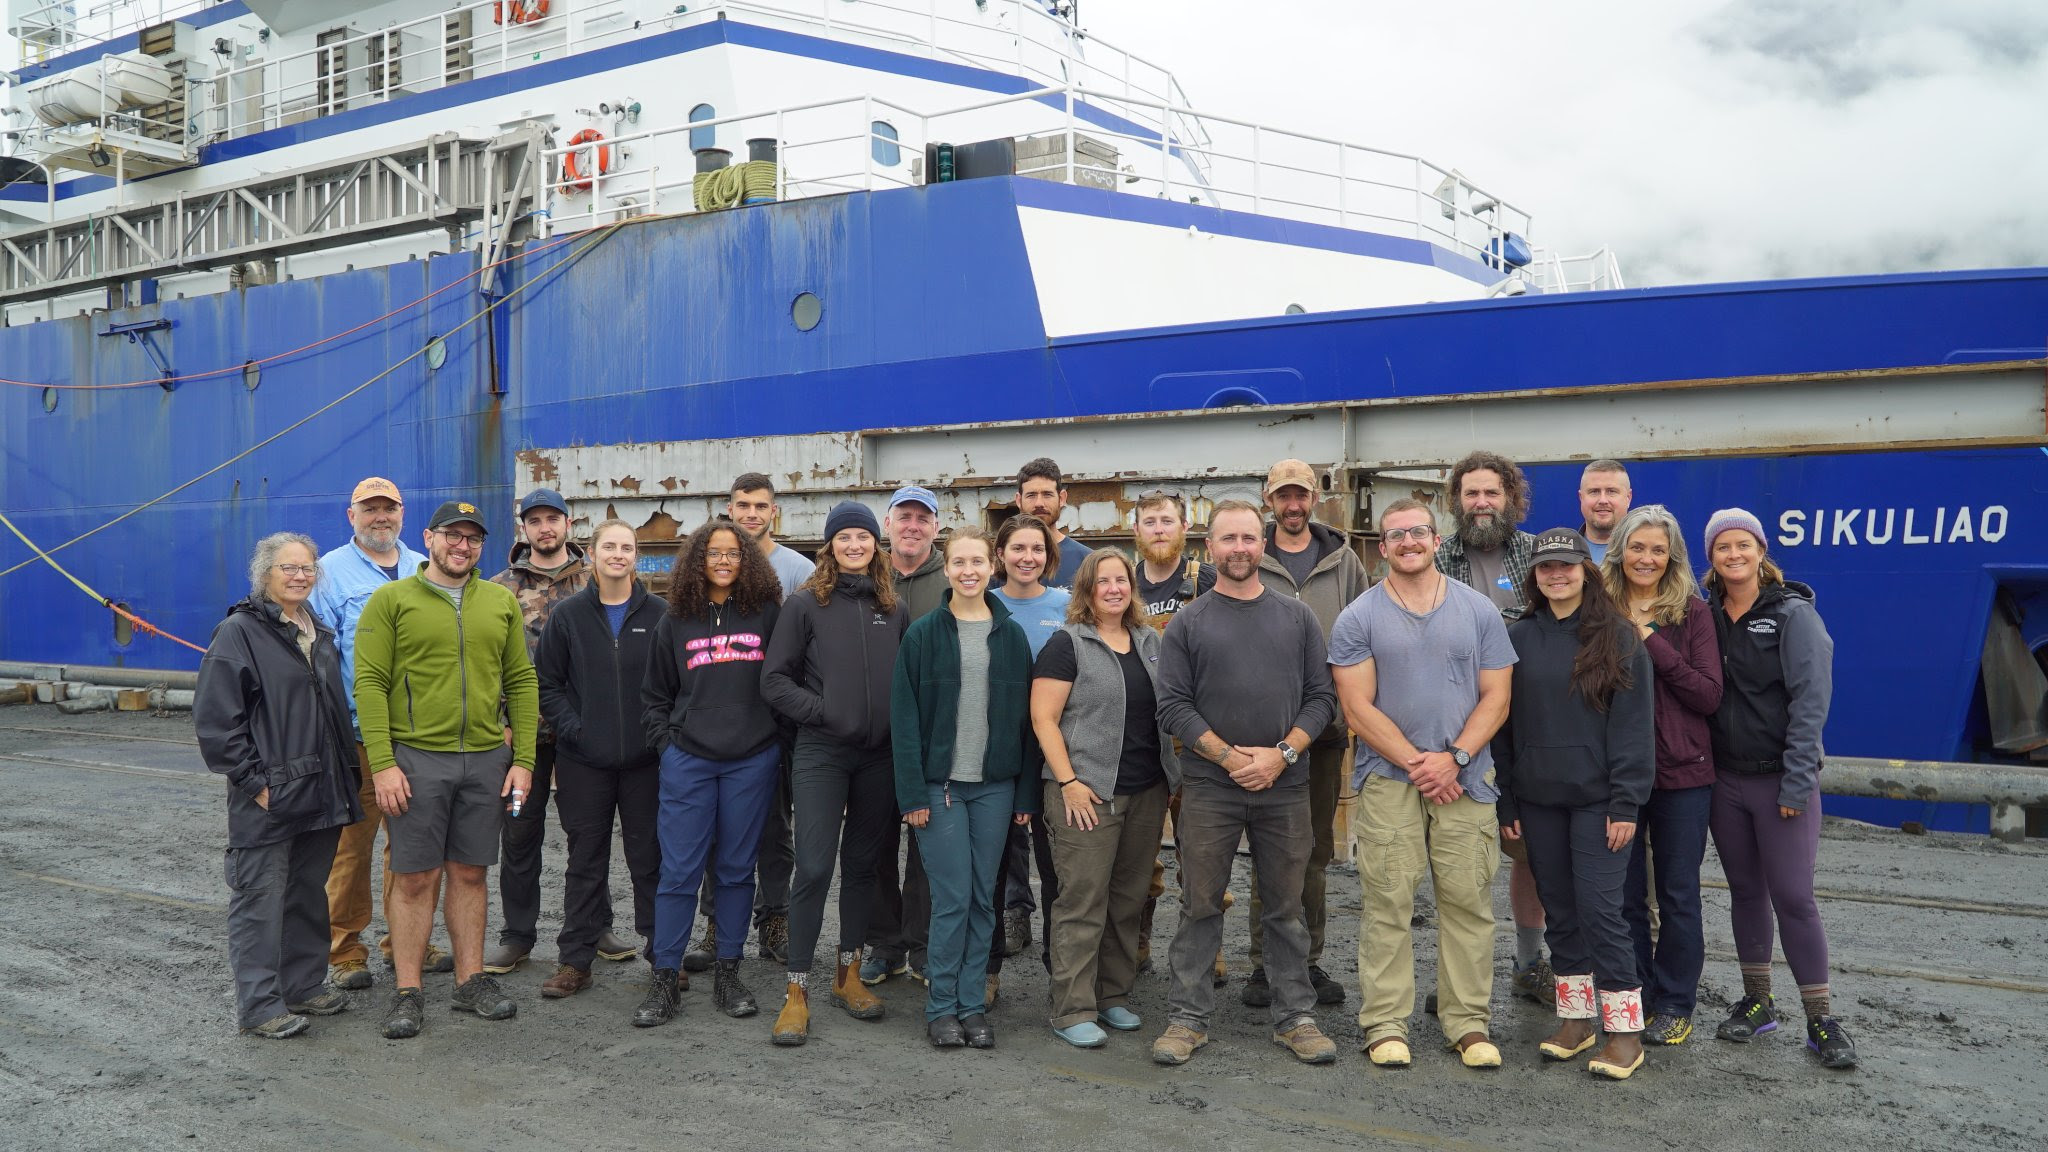 RV Sikuliaqnwith Bering Sea crew